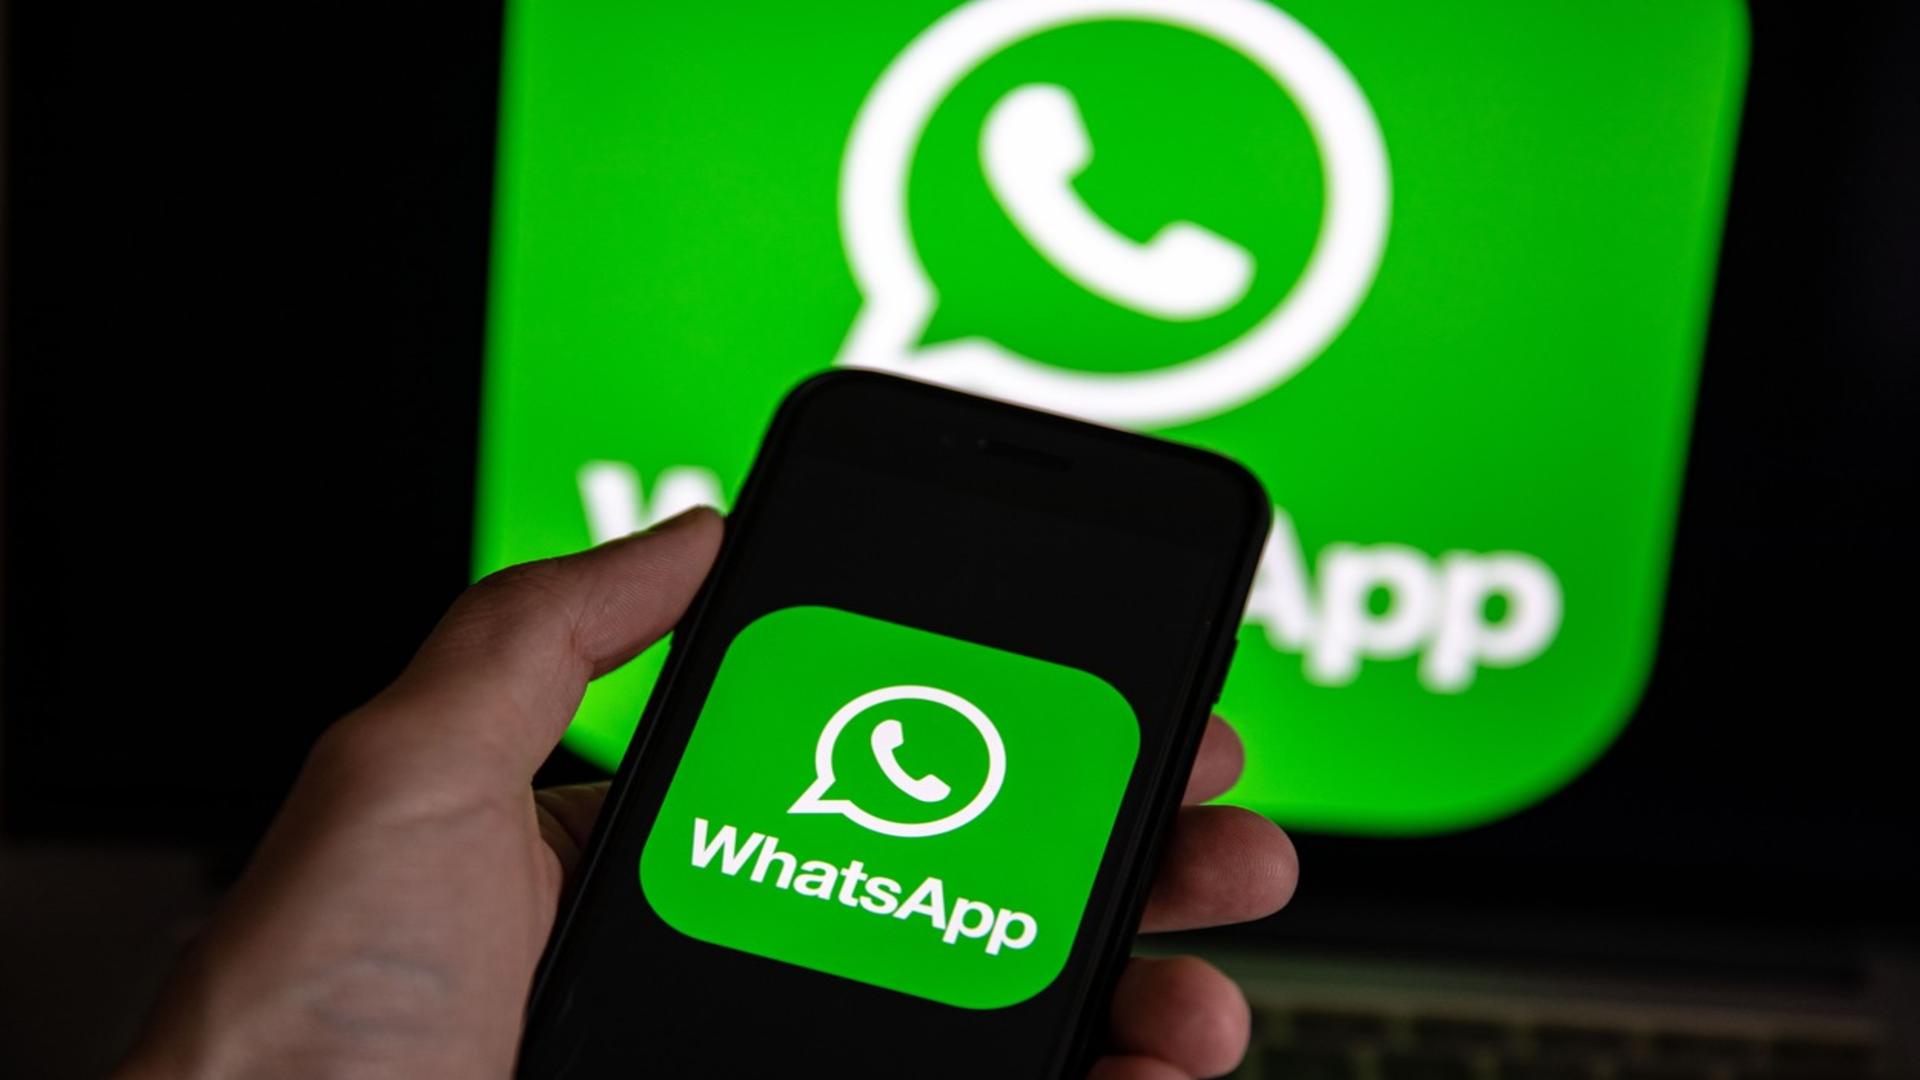 WhatsApp NU va mai funcționa, de la 1 ianuarie, pe aceste modele de telefoane / Foto: Profi Media